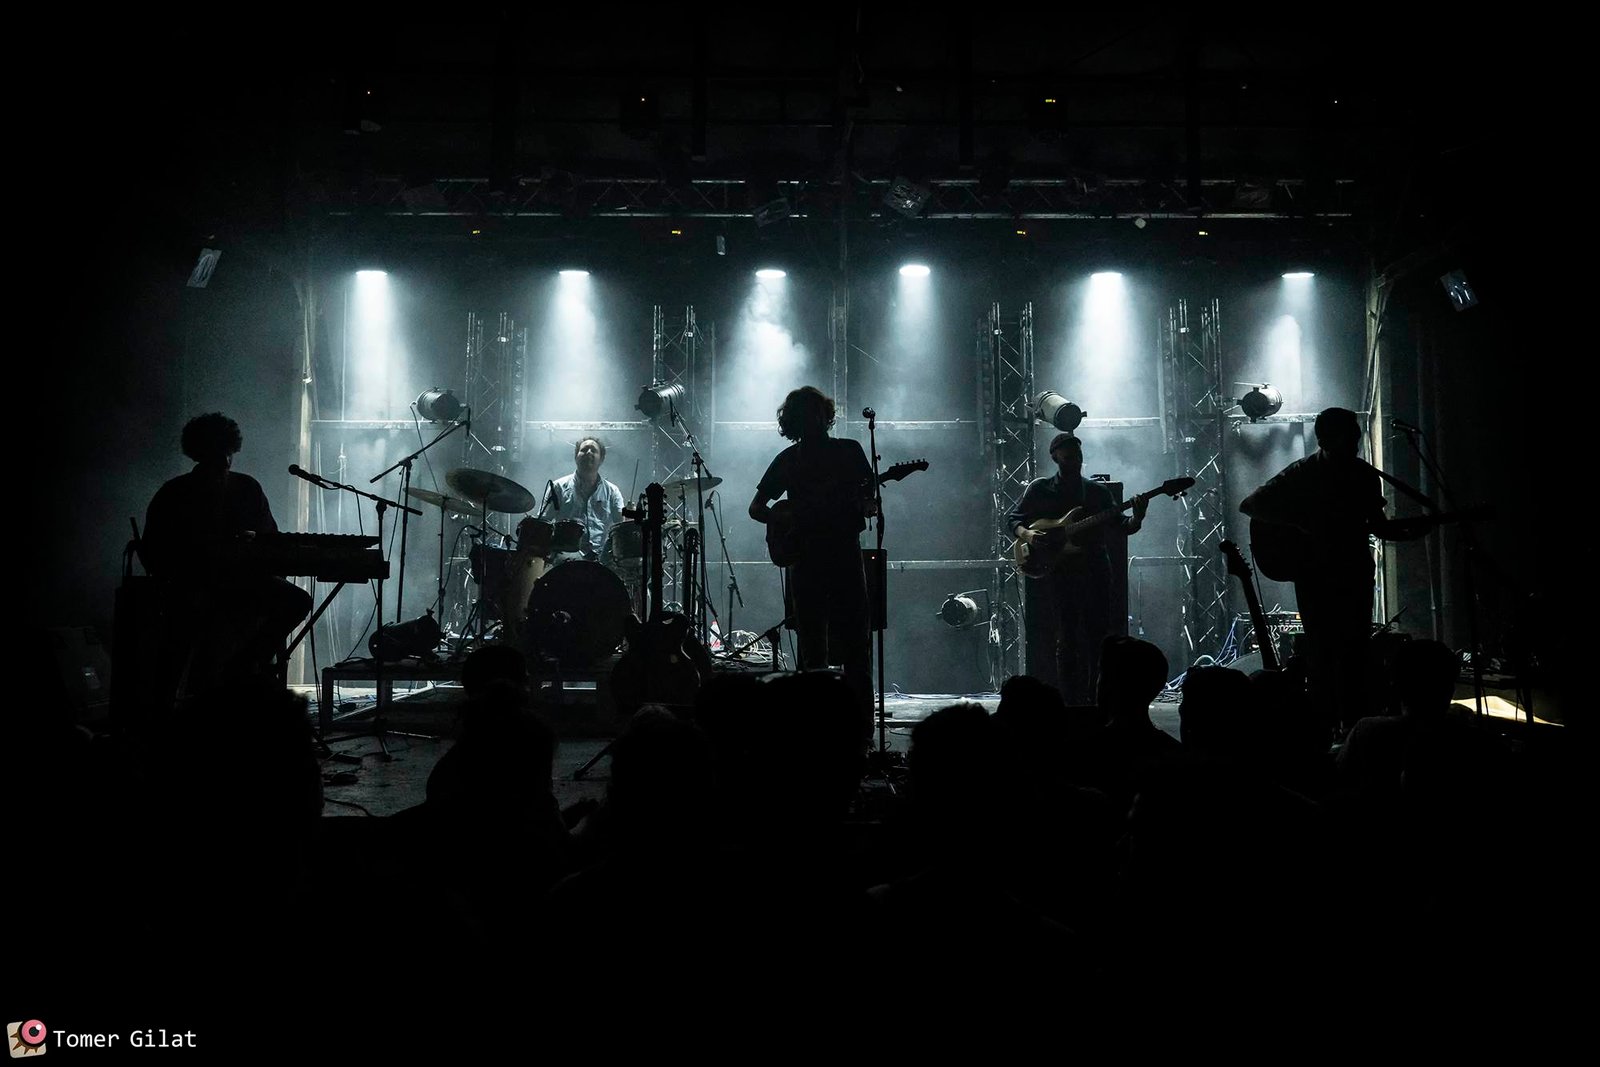 מופע השקת האלבום מונומט של תומר ישעיהו בארבי ת"א צילום: תומר גילת, יוני 2019